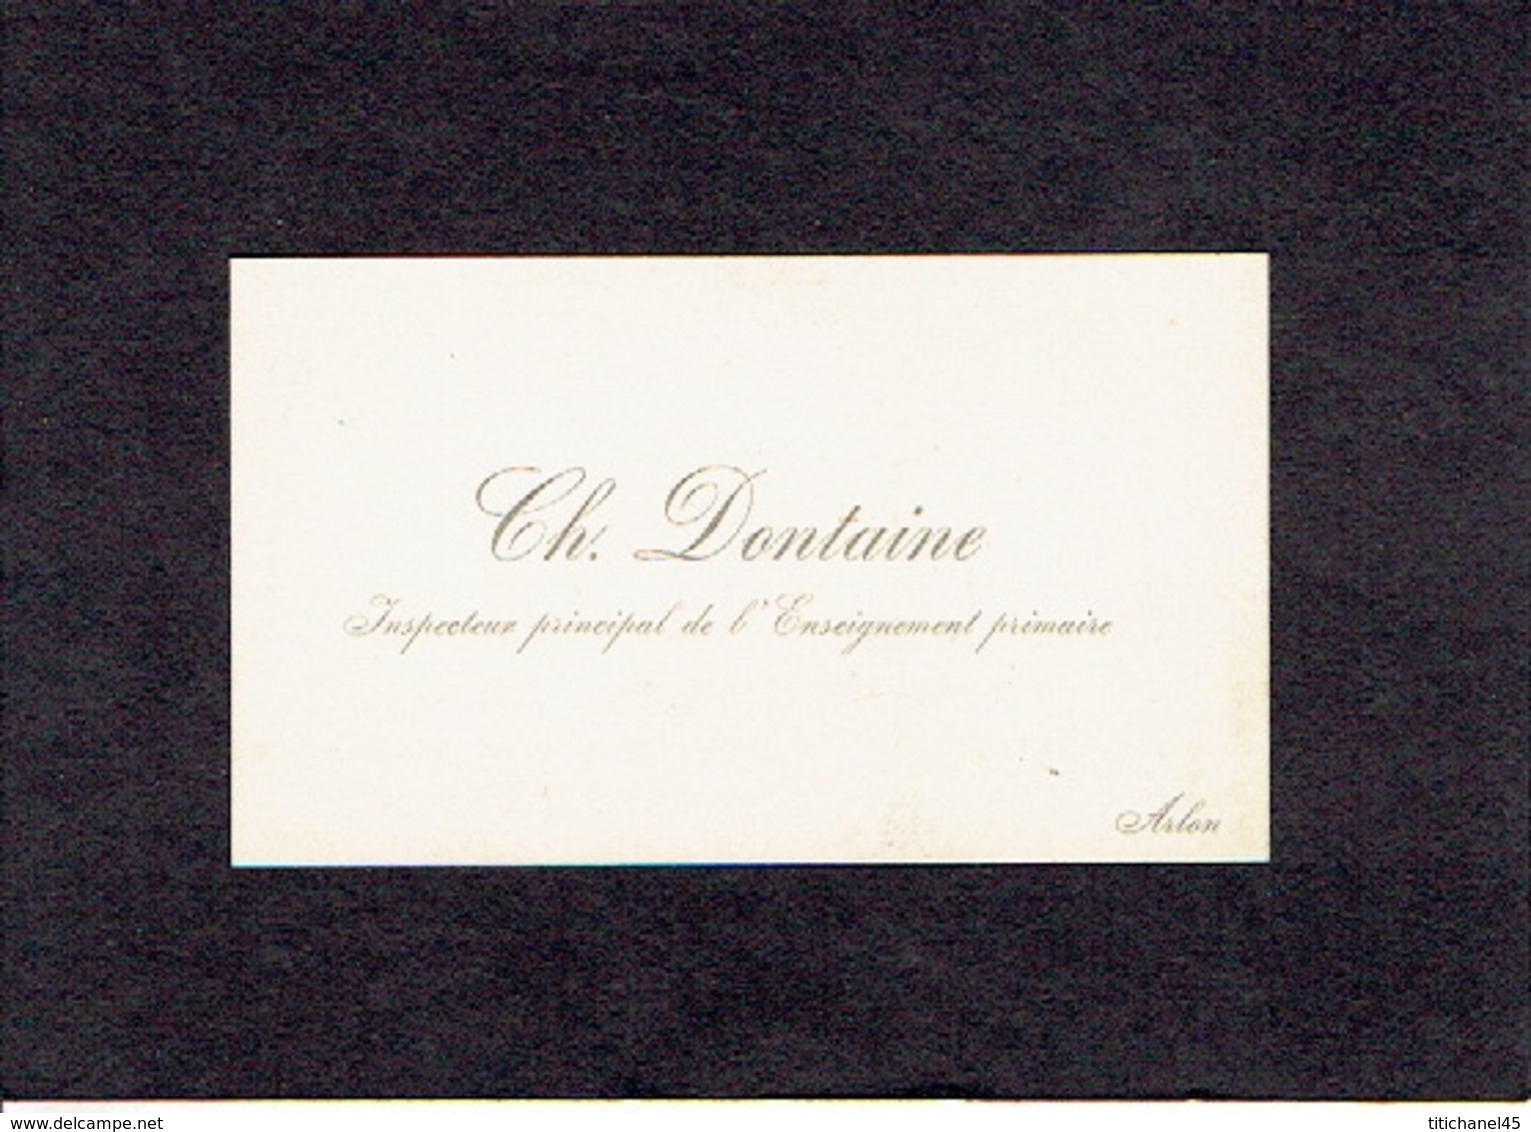 ARLON 1902 - ANCIENNE CARTE DE VISITE - Ch. DONTAINE - Inspecteur Principal De L'Enseignement Primaire - Cartes De Visite